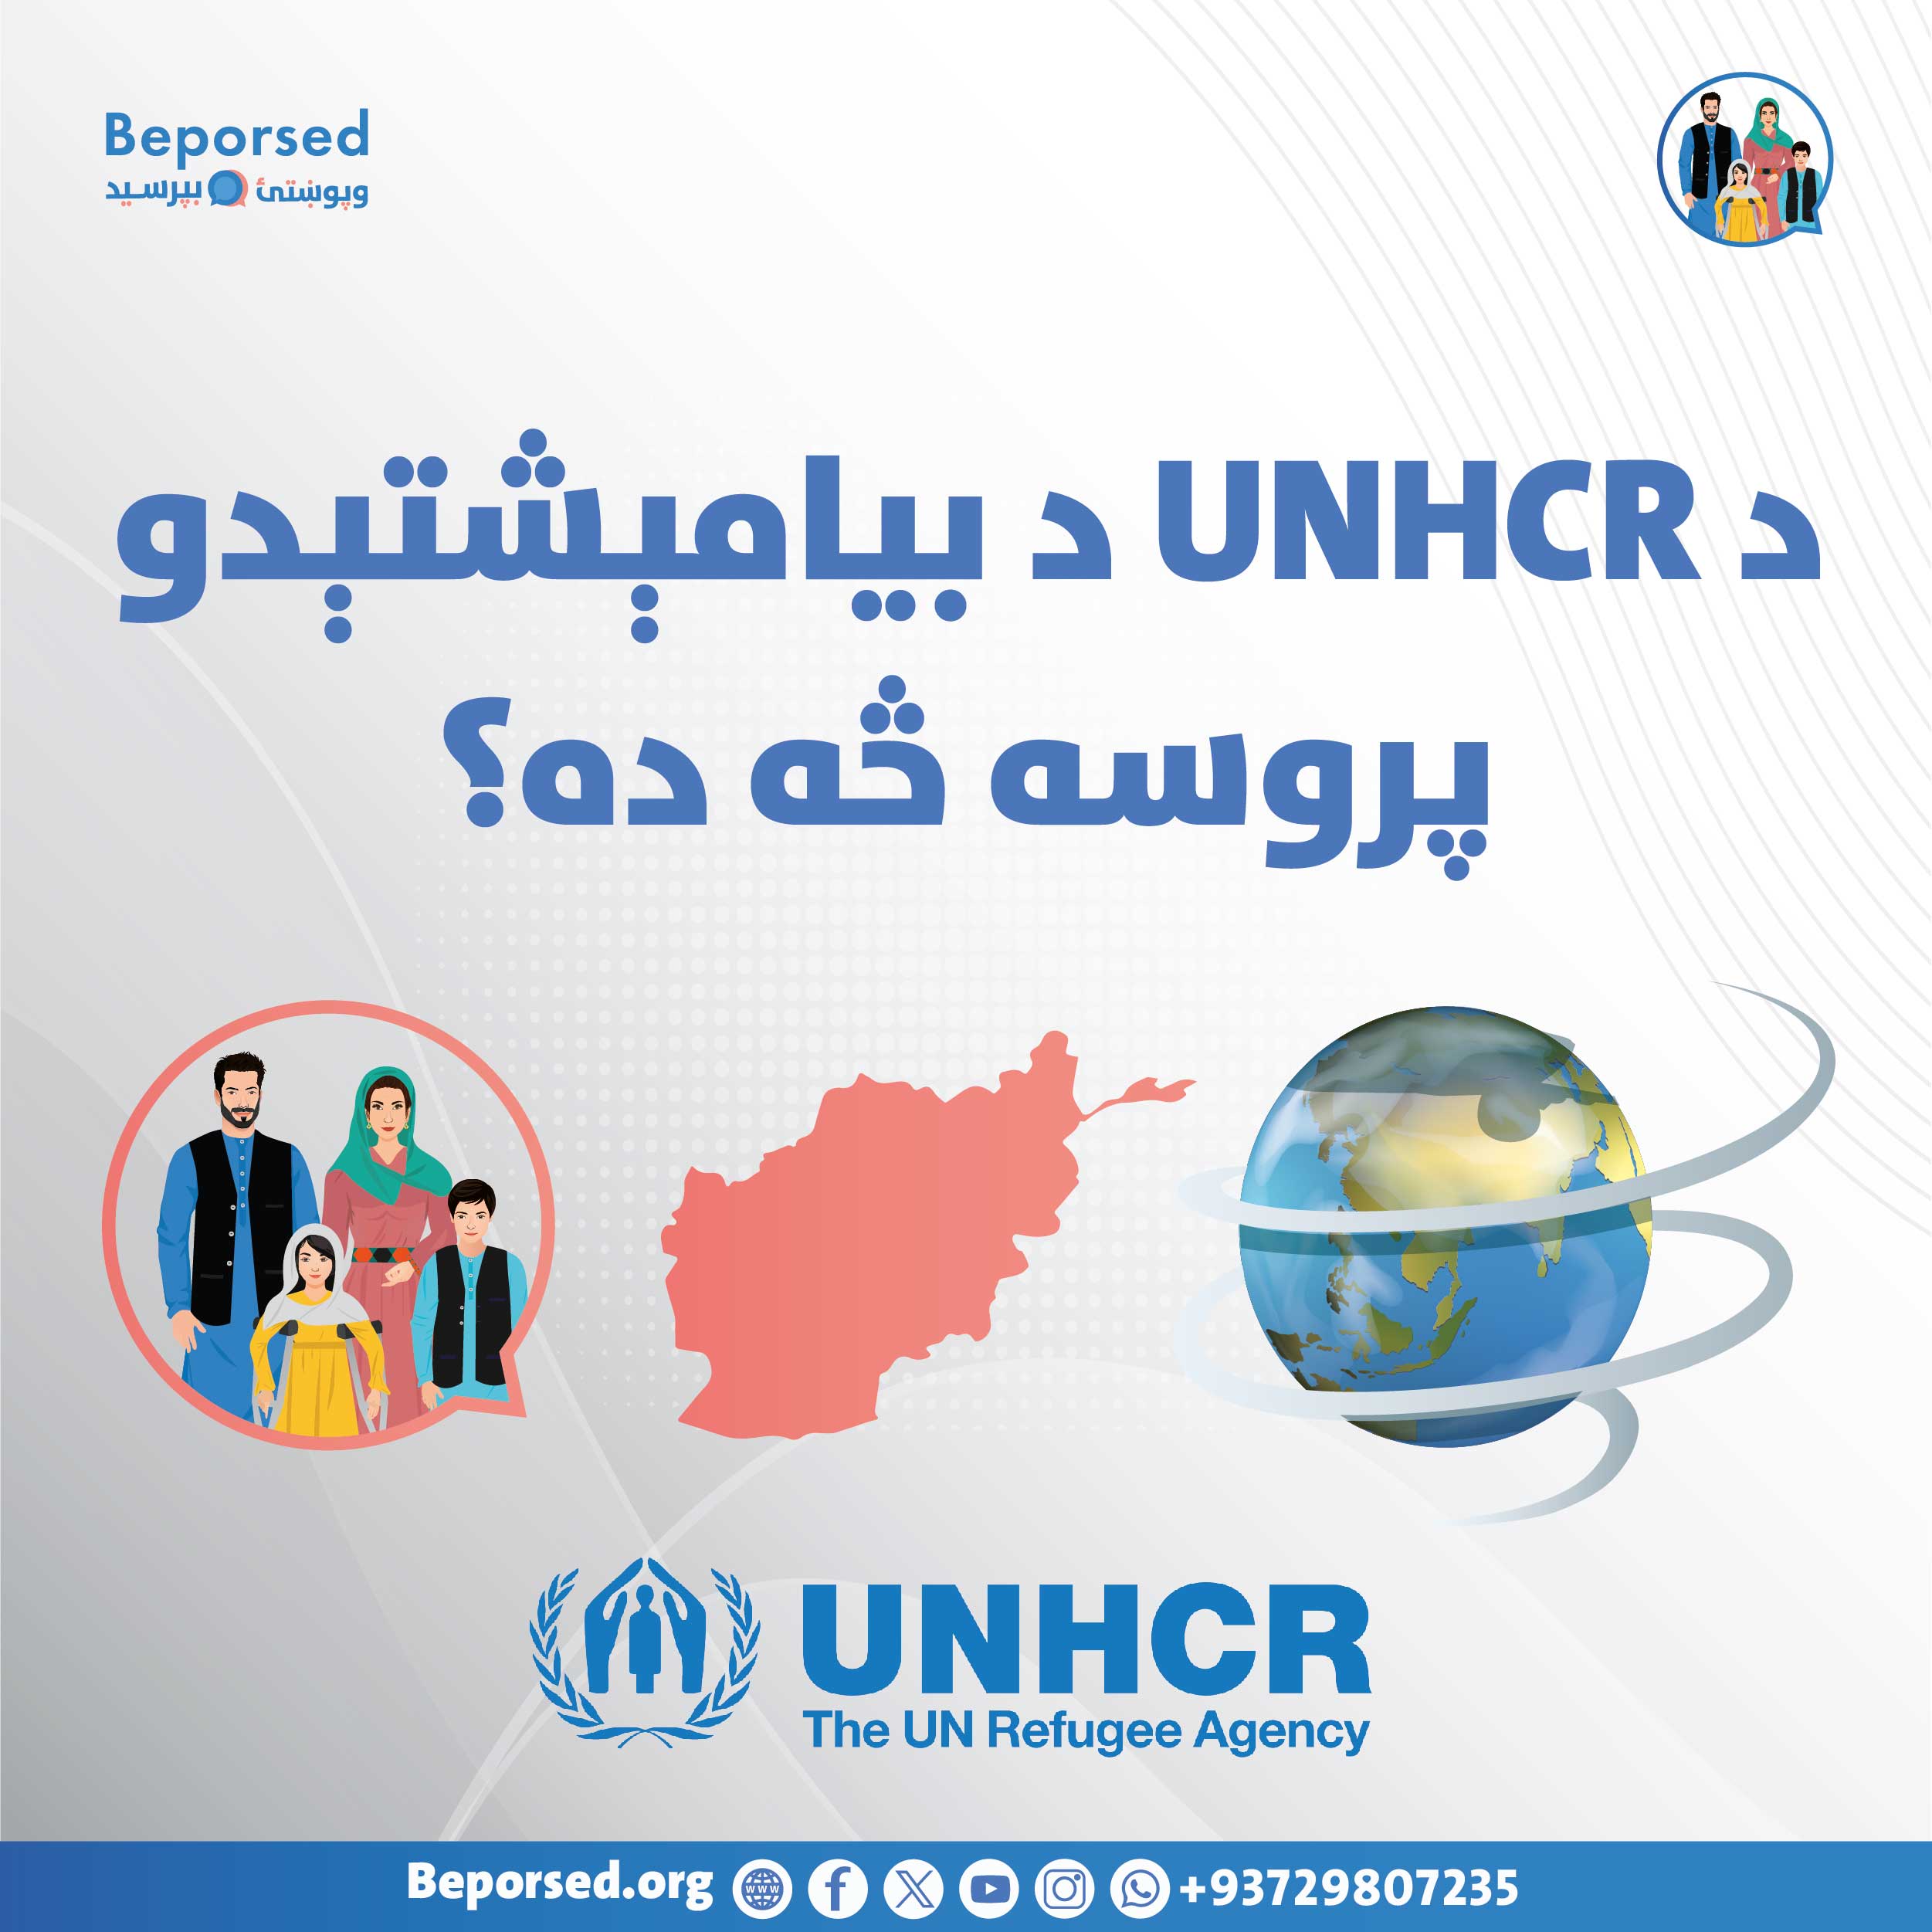 فرایند اسکان مجدد UNHCR چیست؟-02.jpg